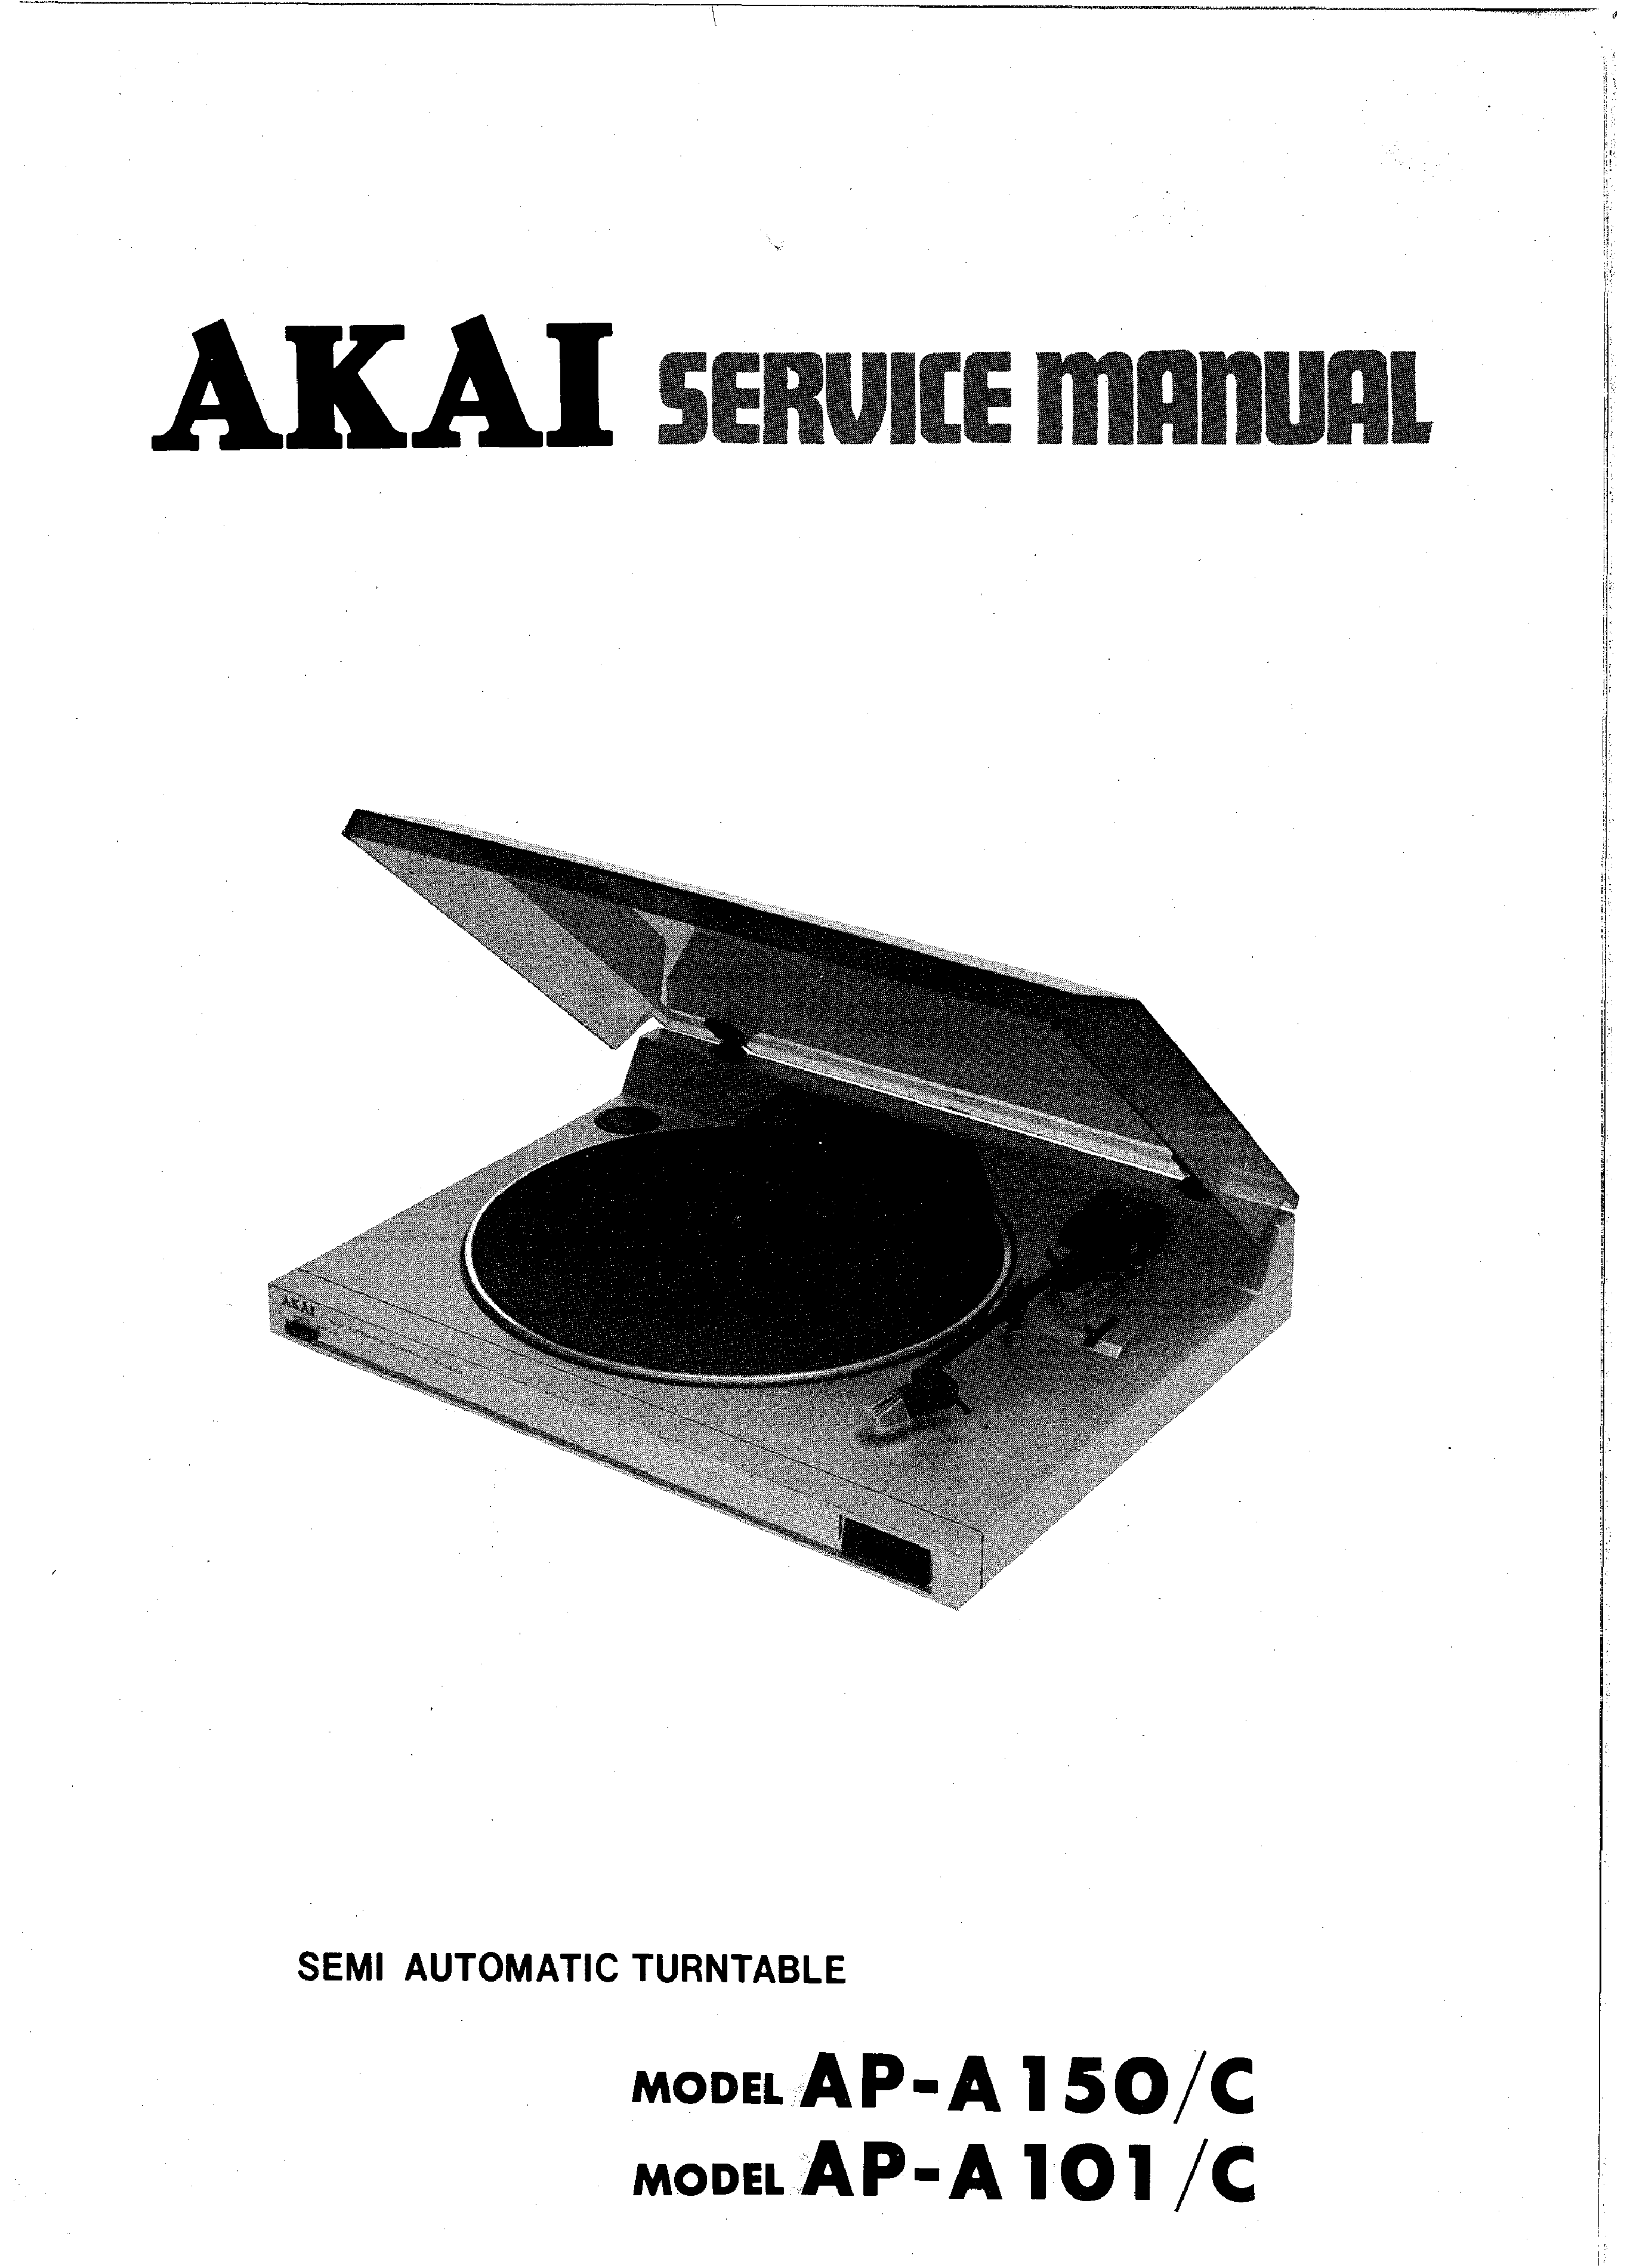 ORIGINALI Service Manual Schema Elettrico AKAI ap-a150/c ap-a101/c 